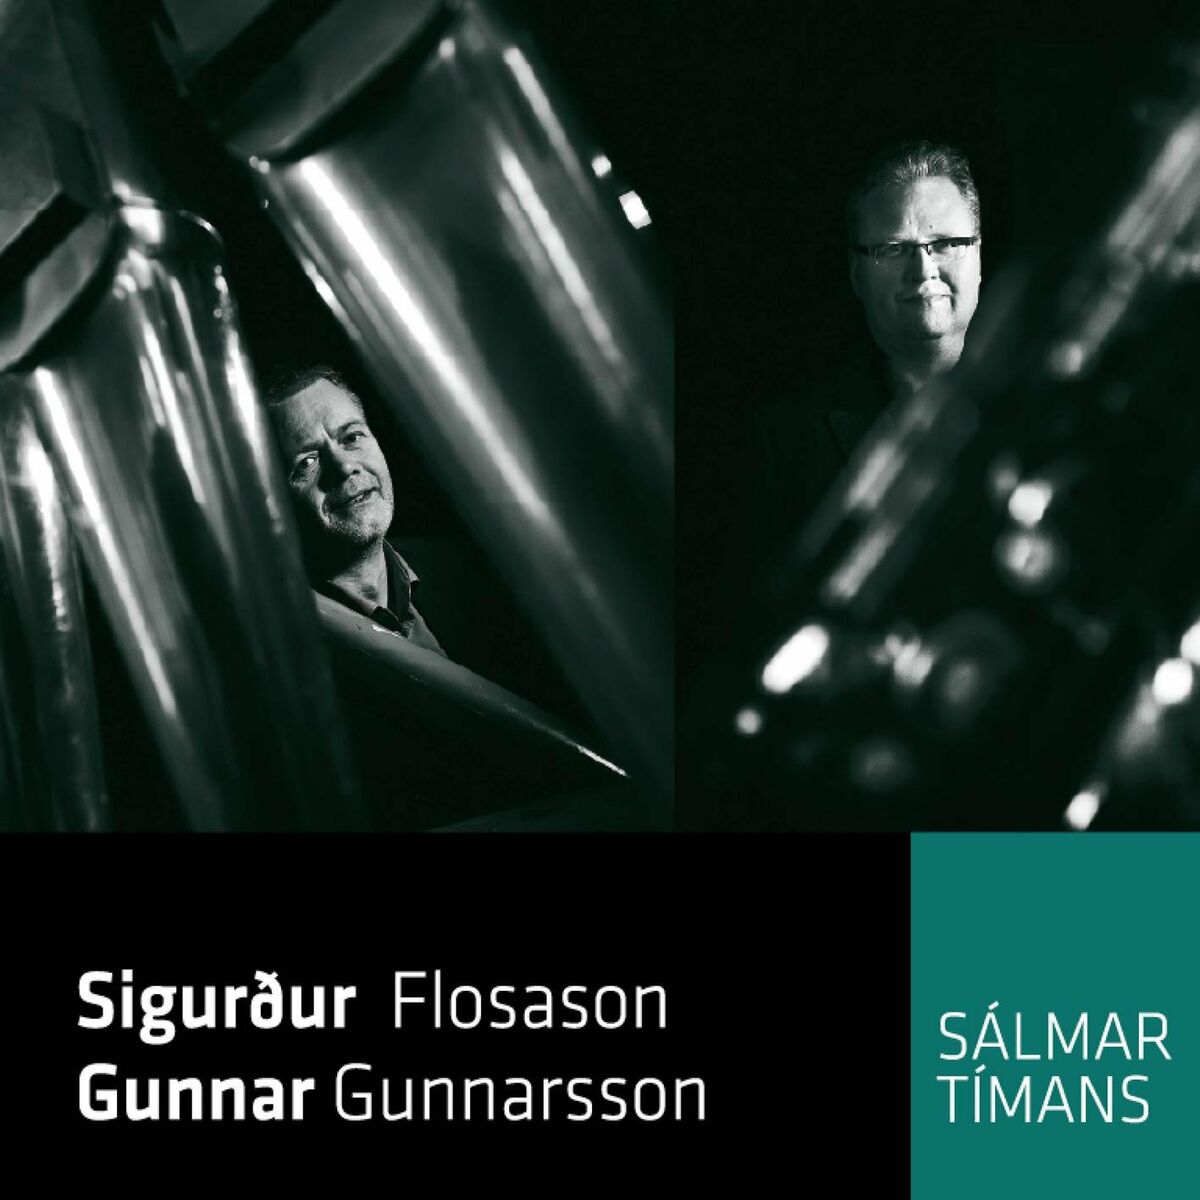 Gunnar Gunnarsson: albums